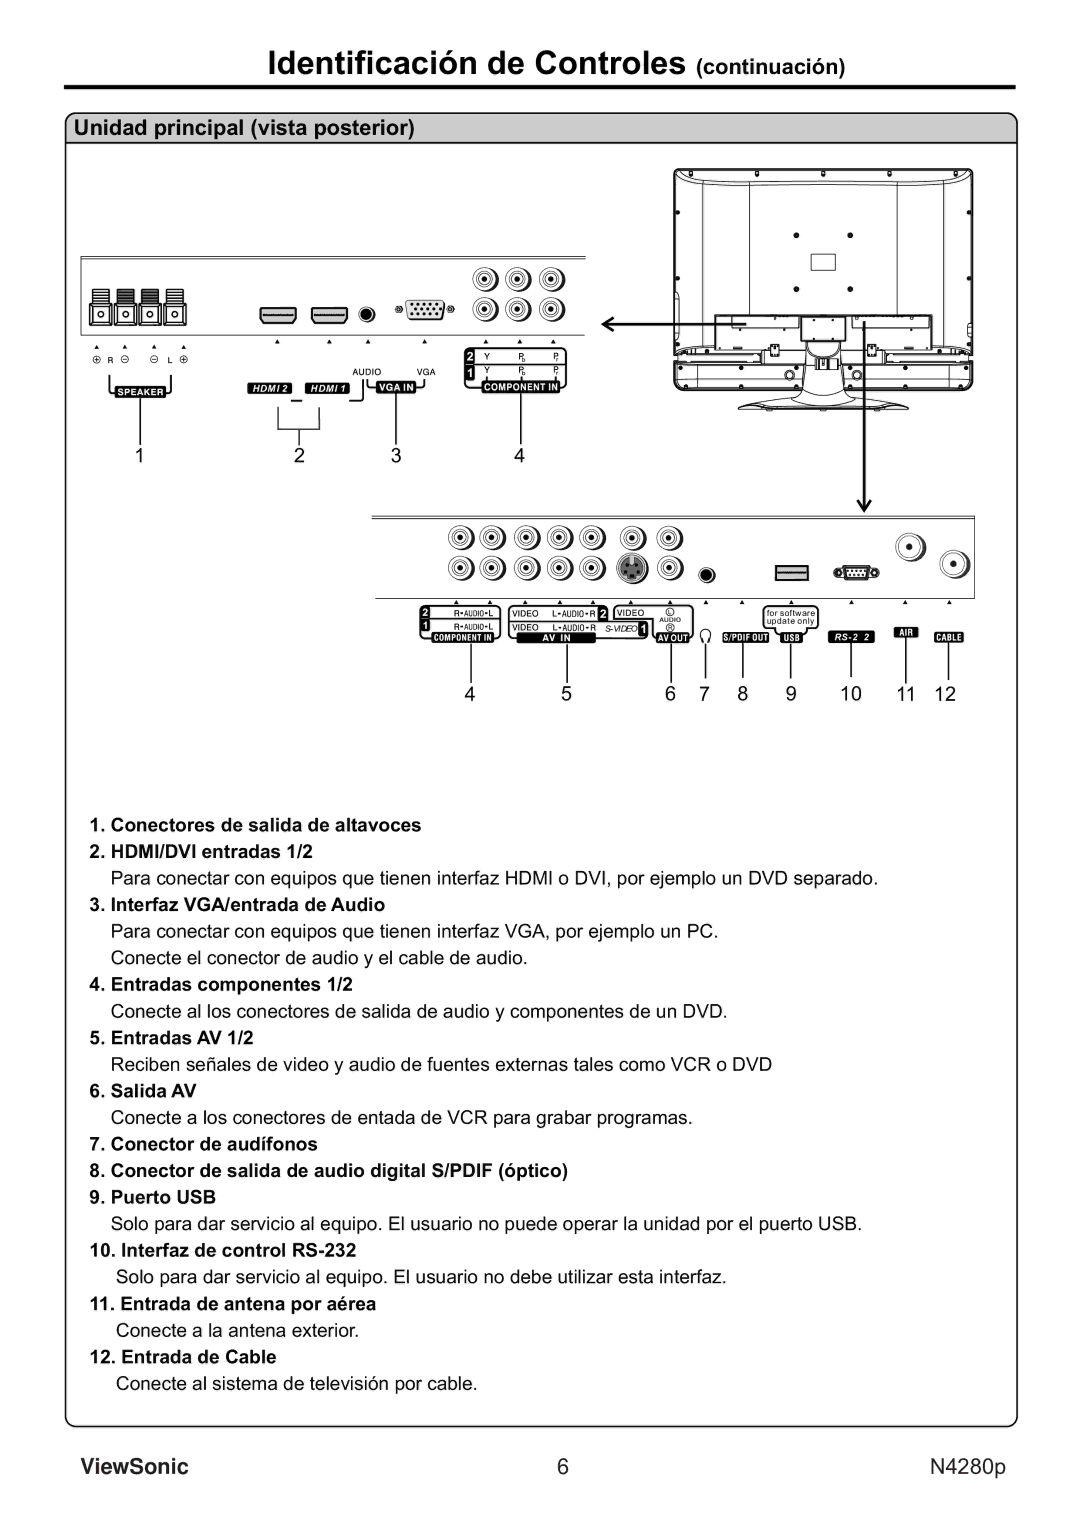 ViewSonic VS11838-1M manual Identificación de Controles continuación, Unidad principal vista posterior 